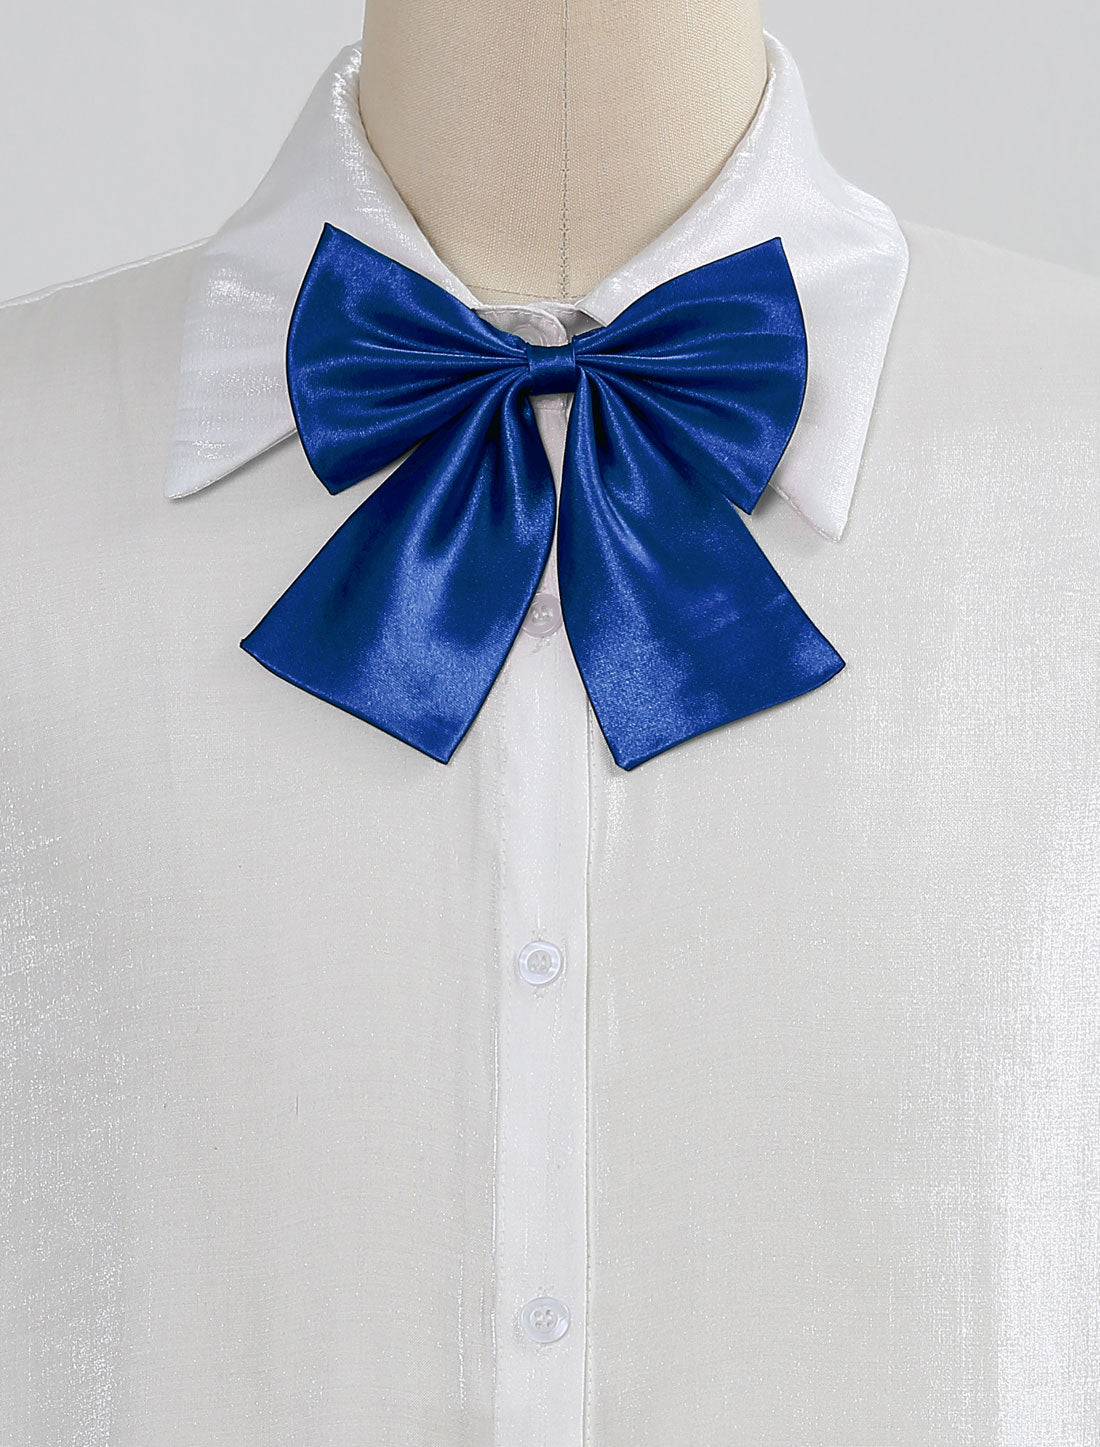 Allegra K Pre-Tied Bowknot Bow Tie Adjustable Bowtie Solid Color